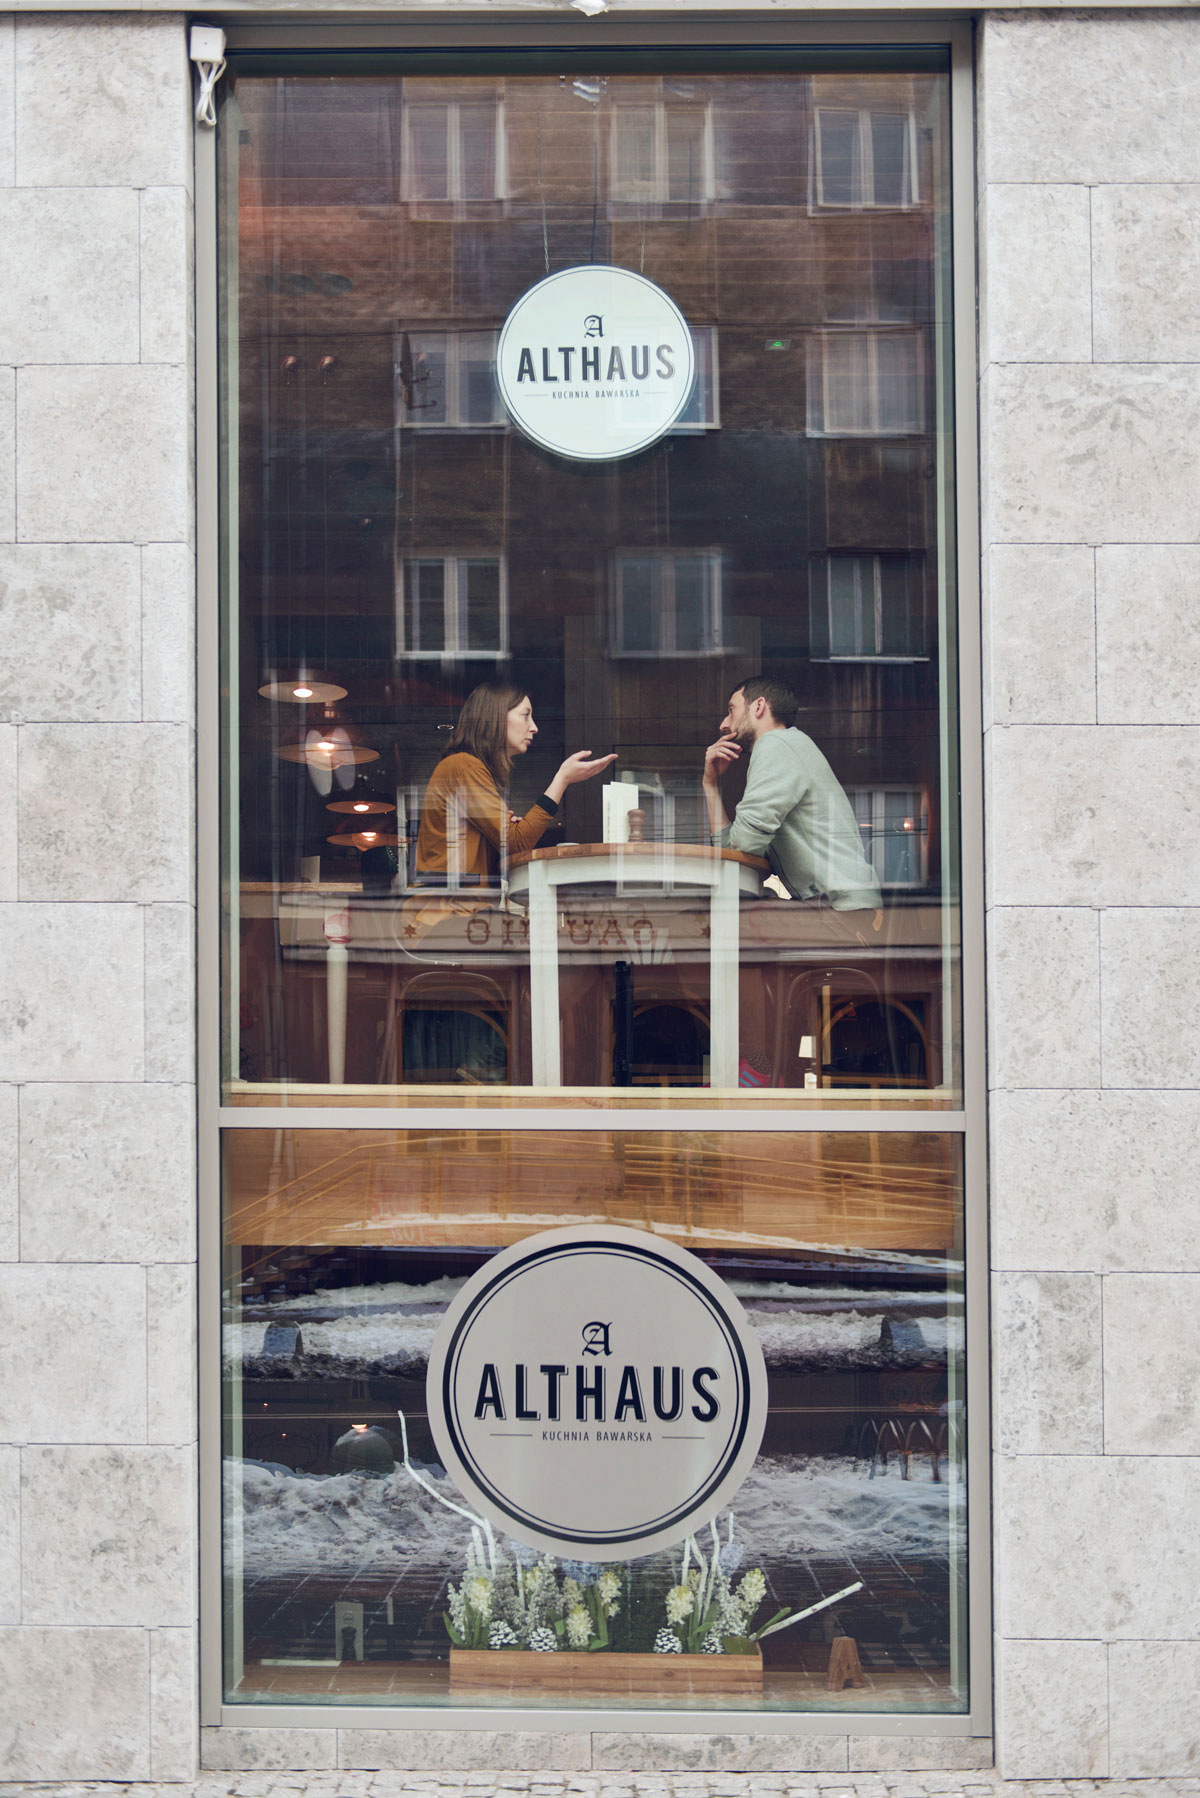 Althaus Restaurant / Pb Studio